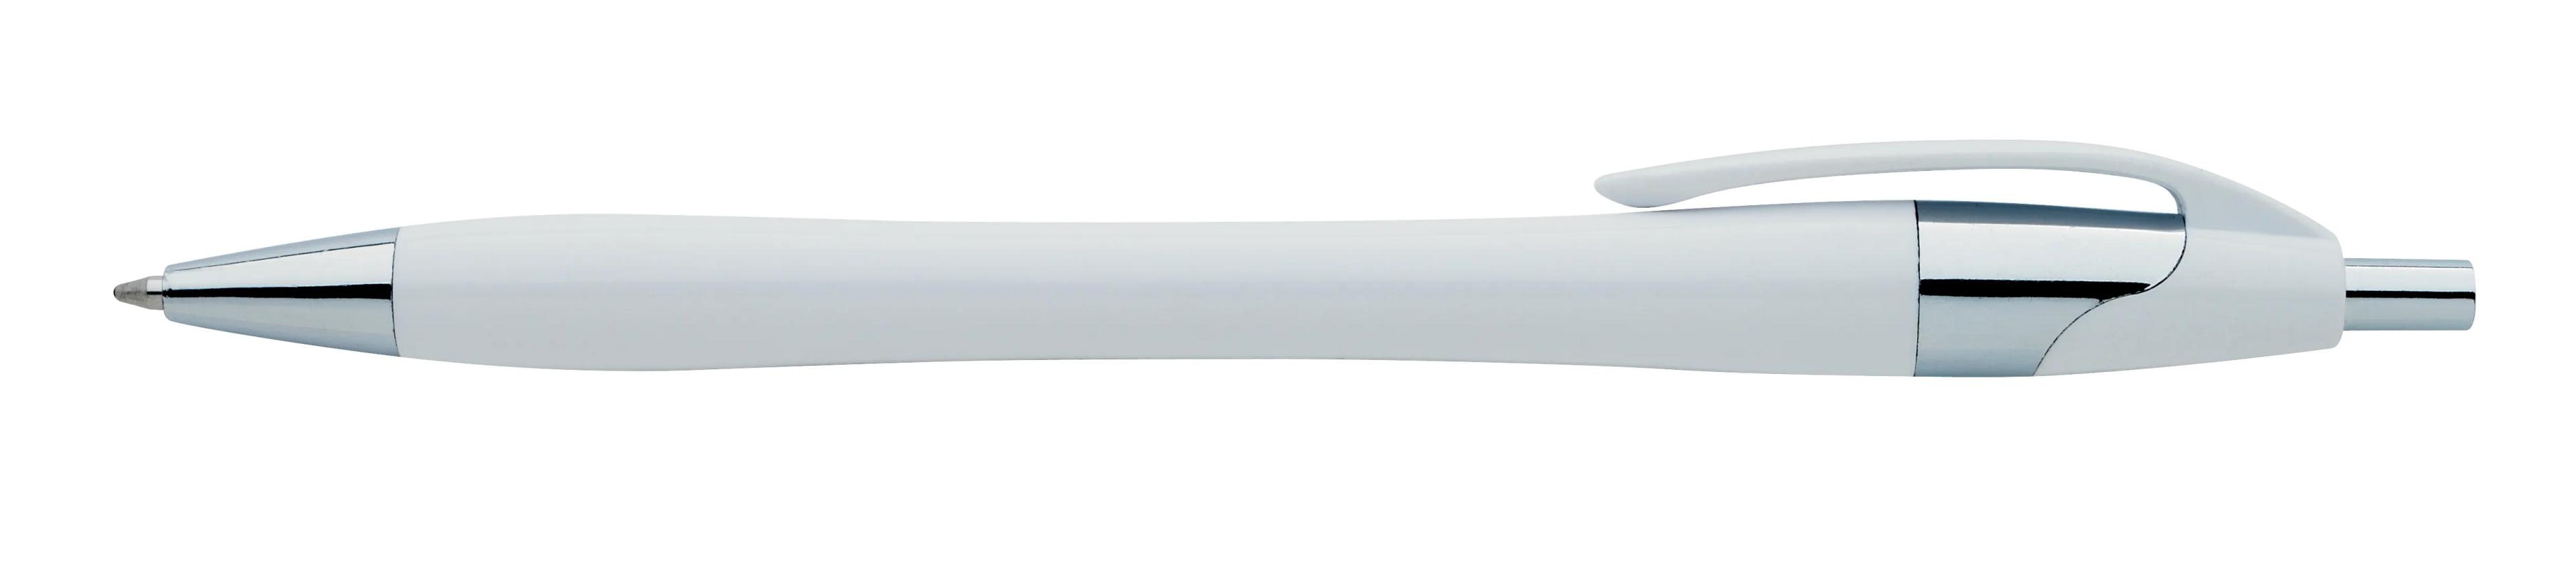 Chrome Dart Pen 2 of 32